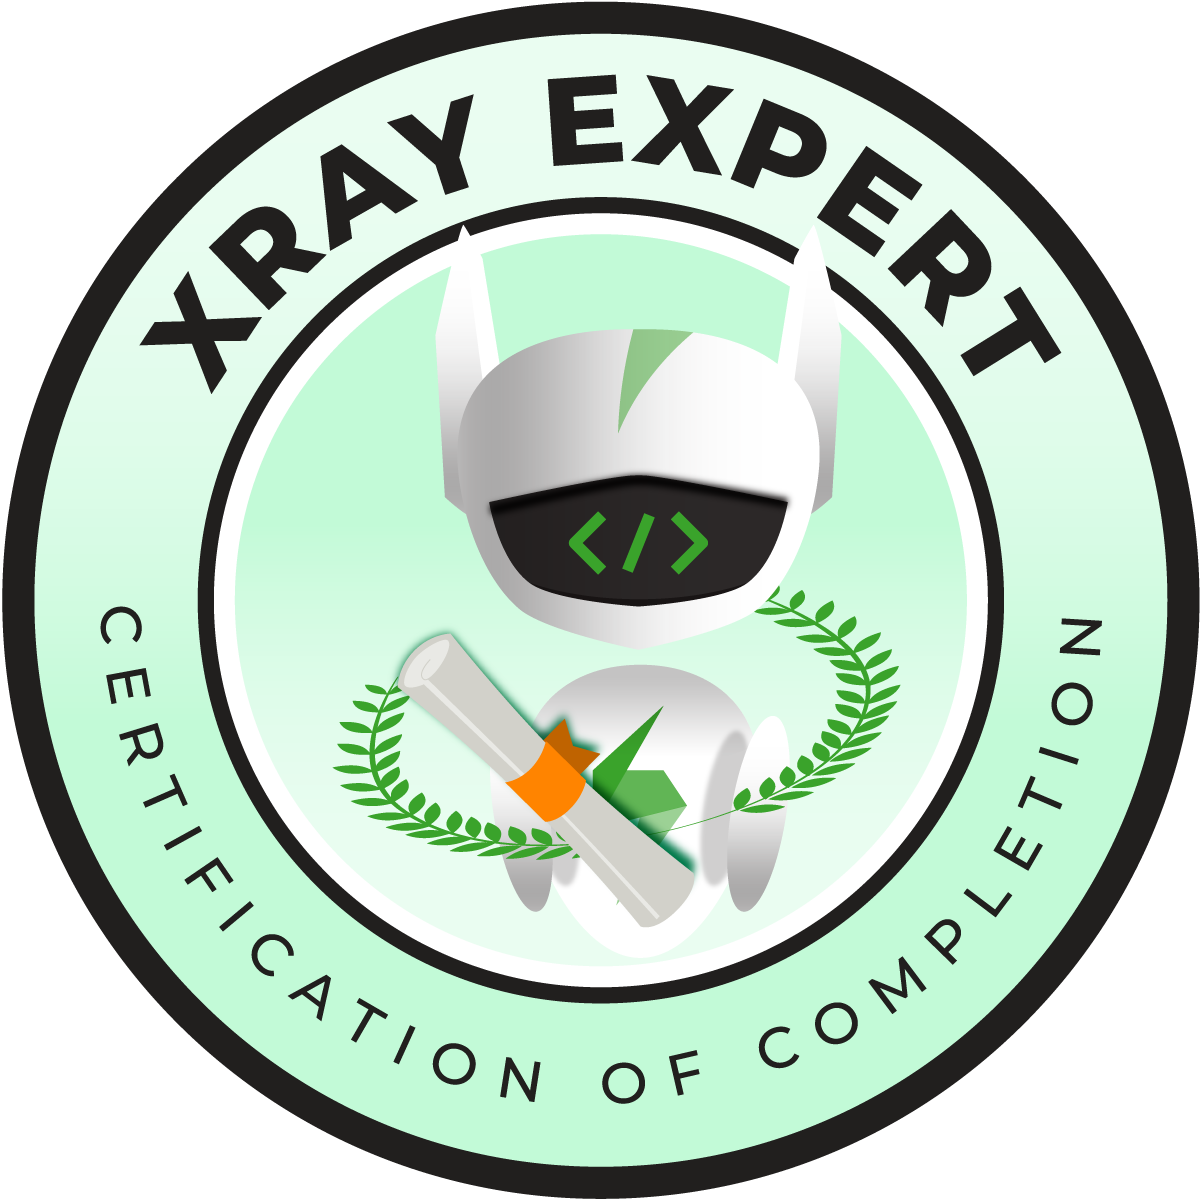 Nonzwakazi Mgxaji | Xray Expert Badge